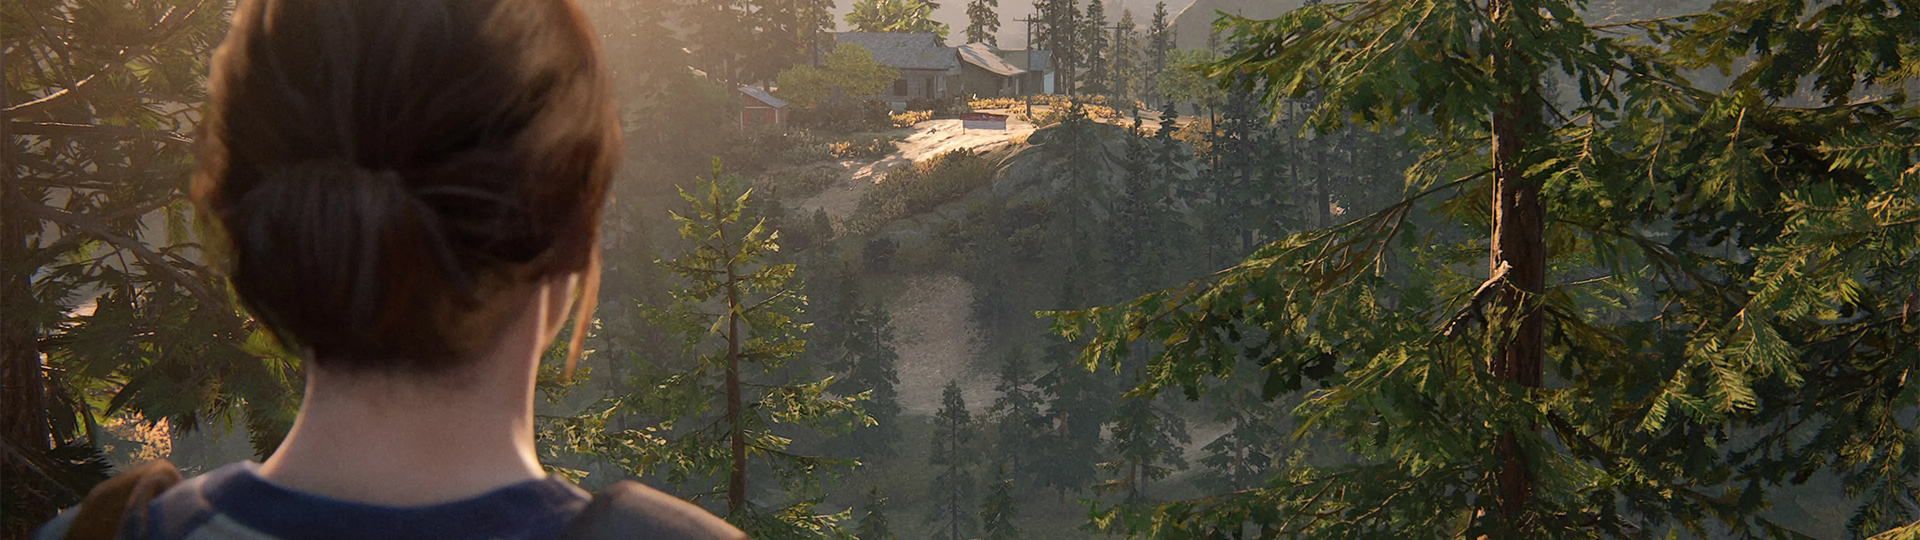 Update přichází s vylepšením výkonu Last of Us 2 na PS5 | Novinky